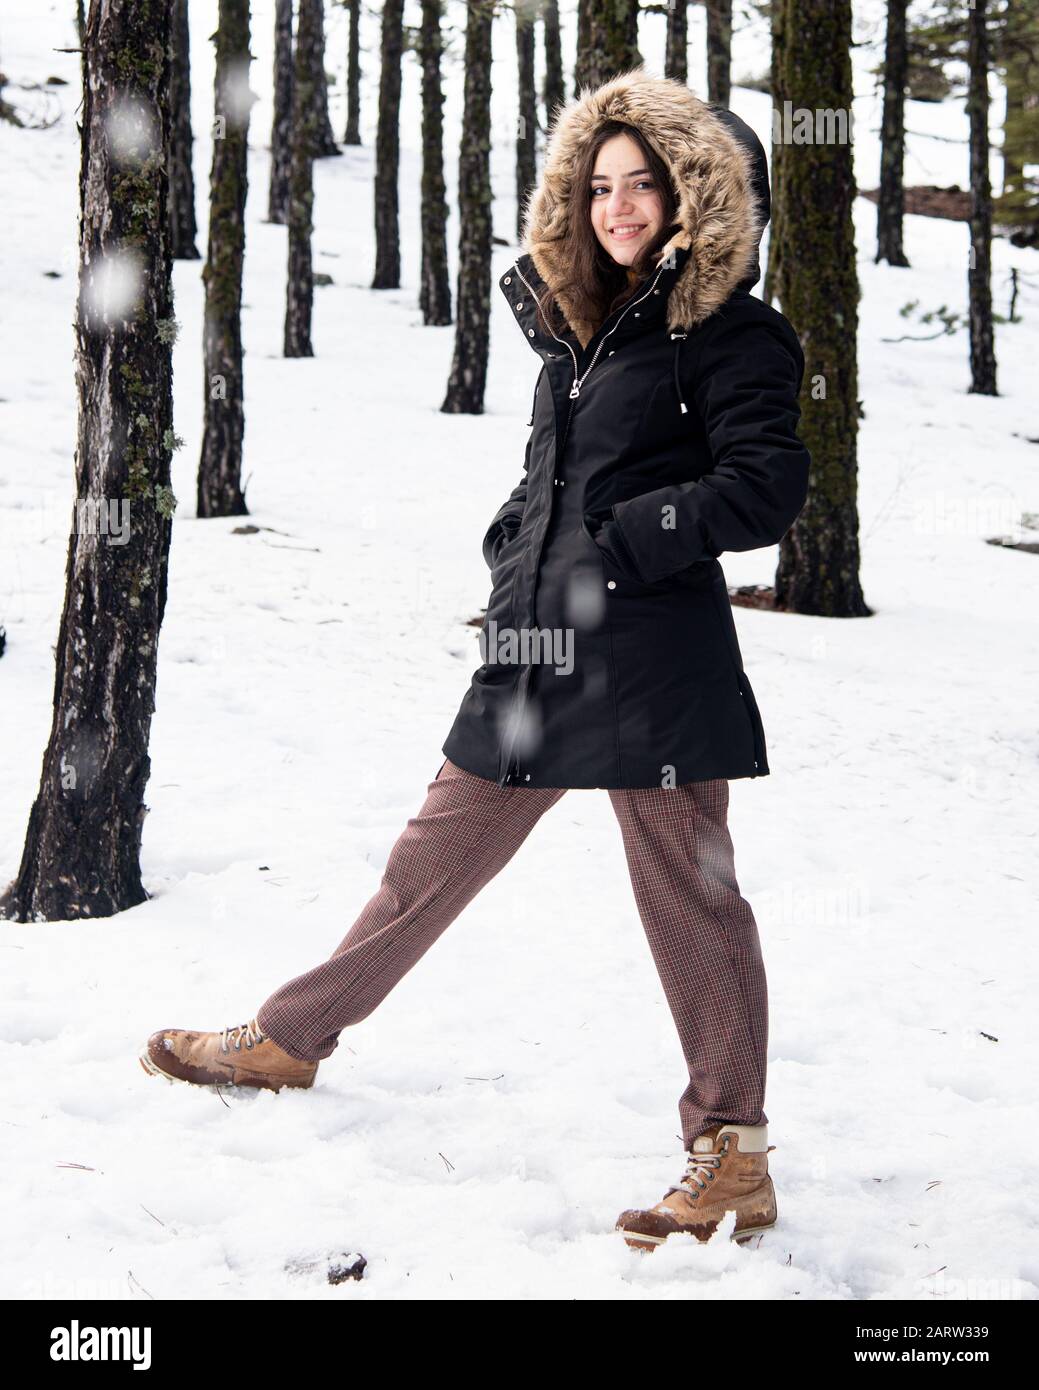 Junges glückliches und wunderschönes Mädchen im Teenager-Alter, das sich in Winterkleidung kleidete und auf Schnee stand und lächelte. Troodos Berge auf Zypern Stockfoto